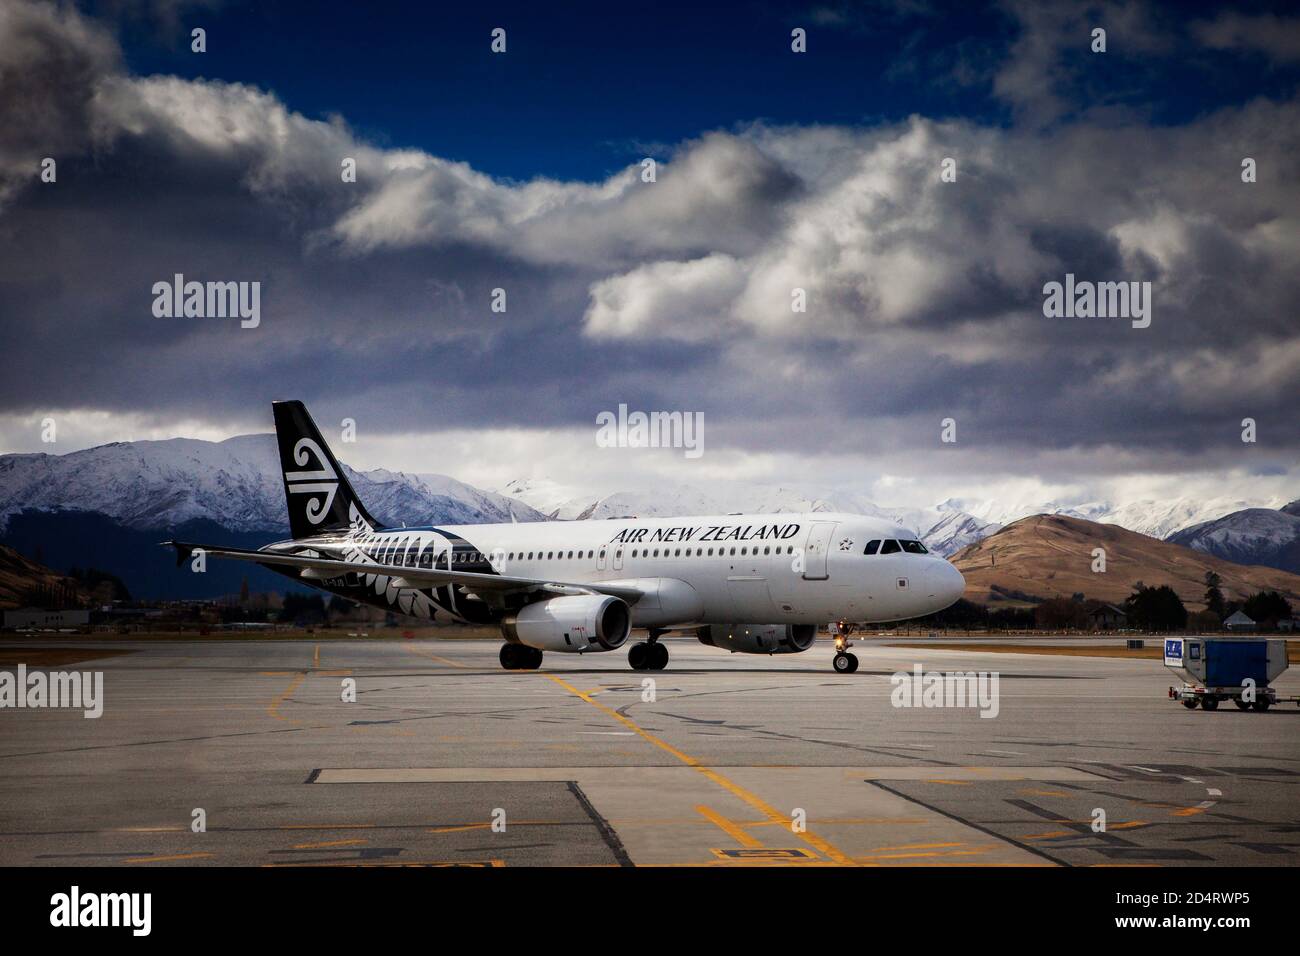 QUEENSTOWN NOUVELLE-ZÉLANDE - SEPTEMBRE 6,2015 : approche aérienne de l'avion de la nouvelle-zélande sur la piste avant l'embarquement Banque D'Images